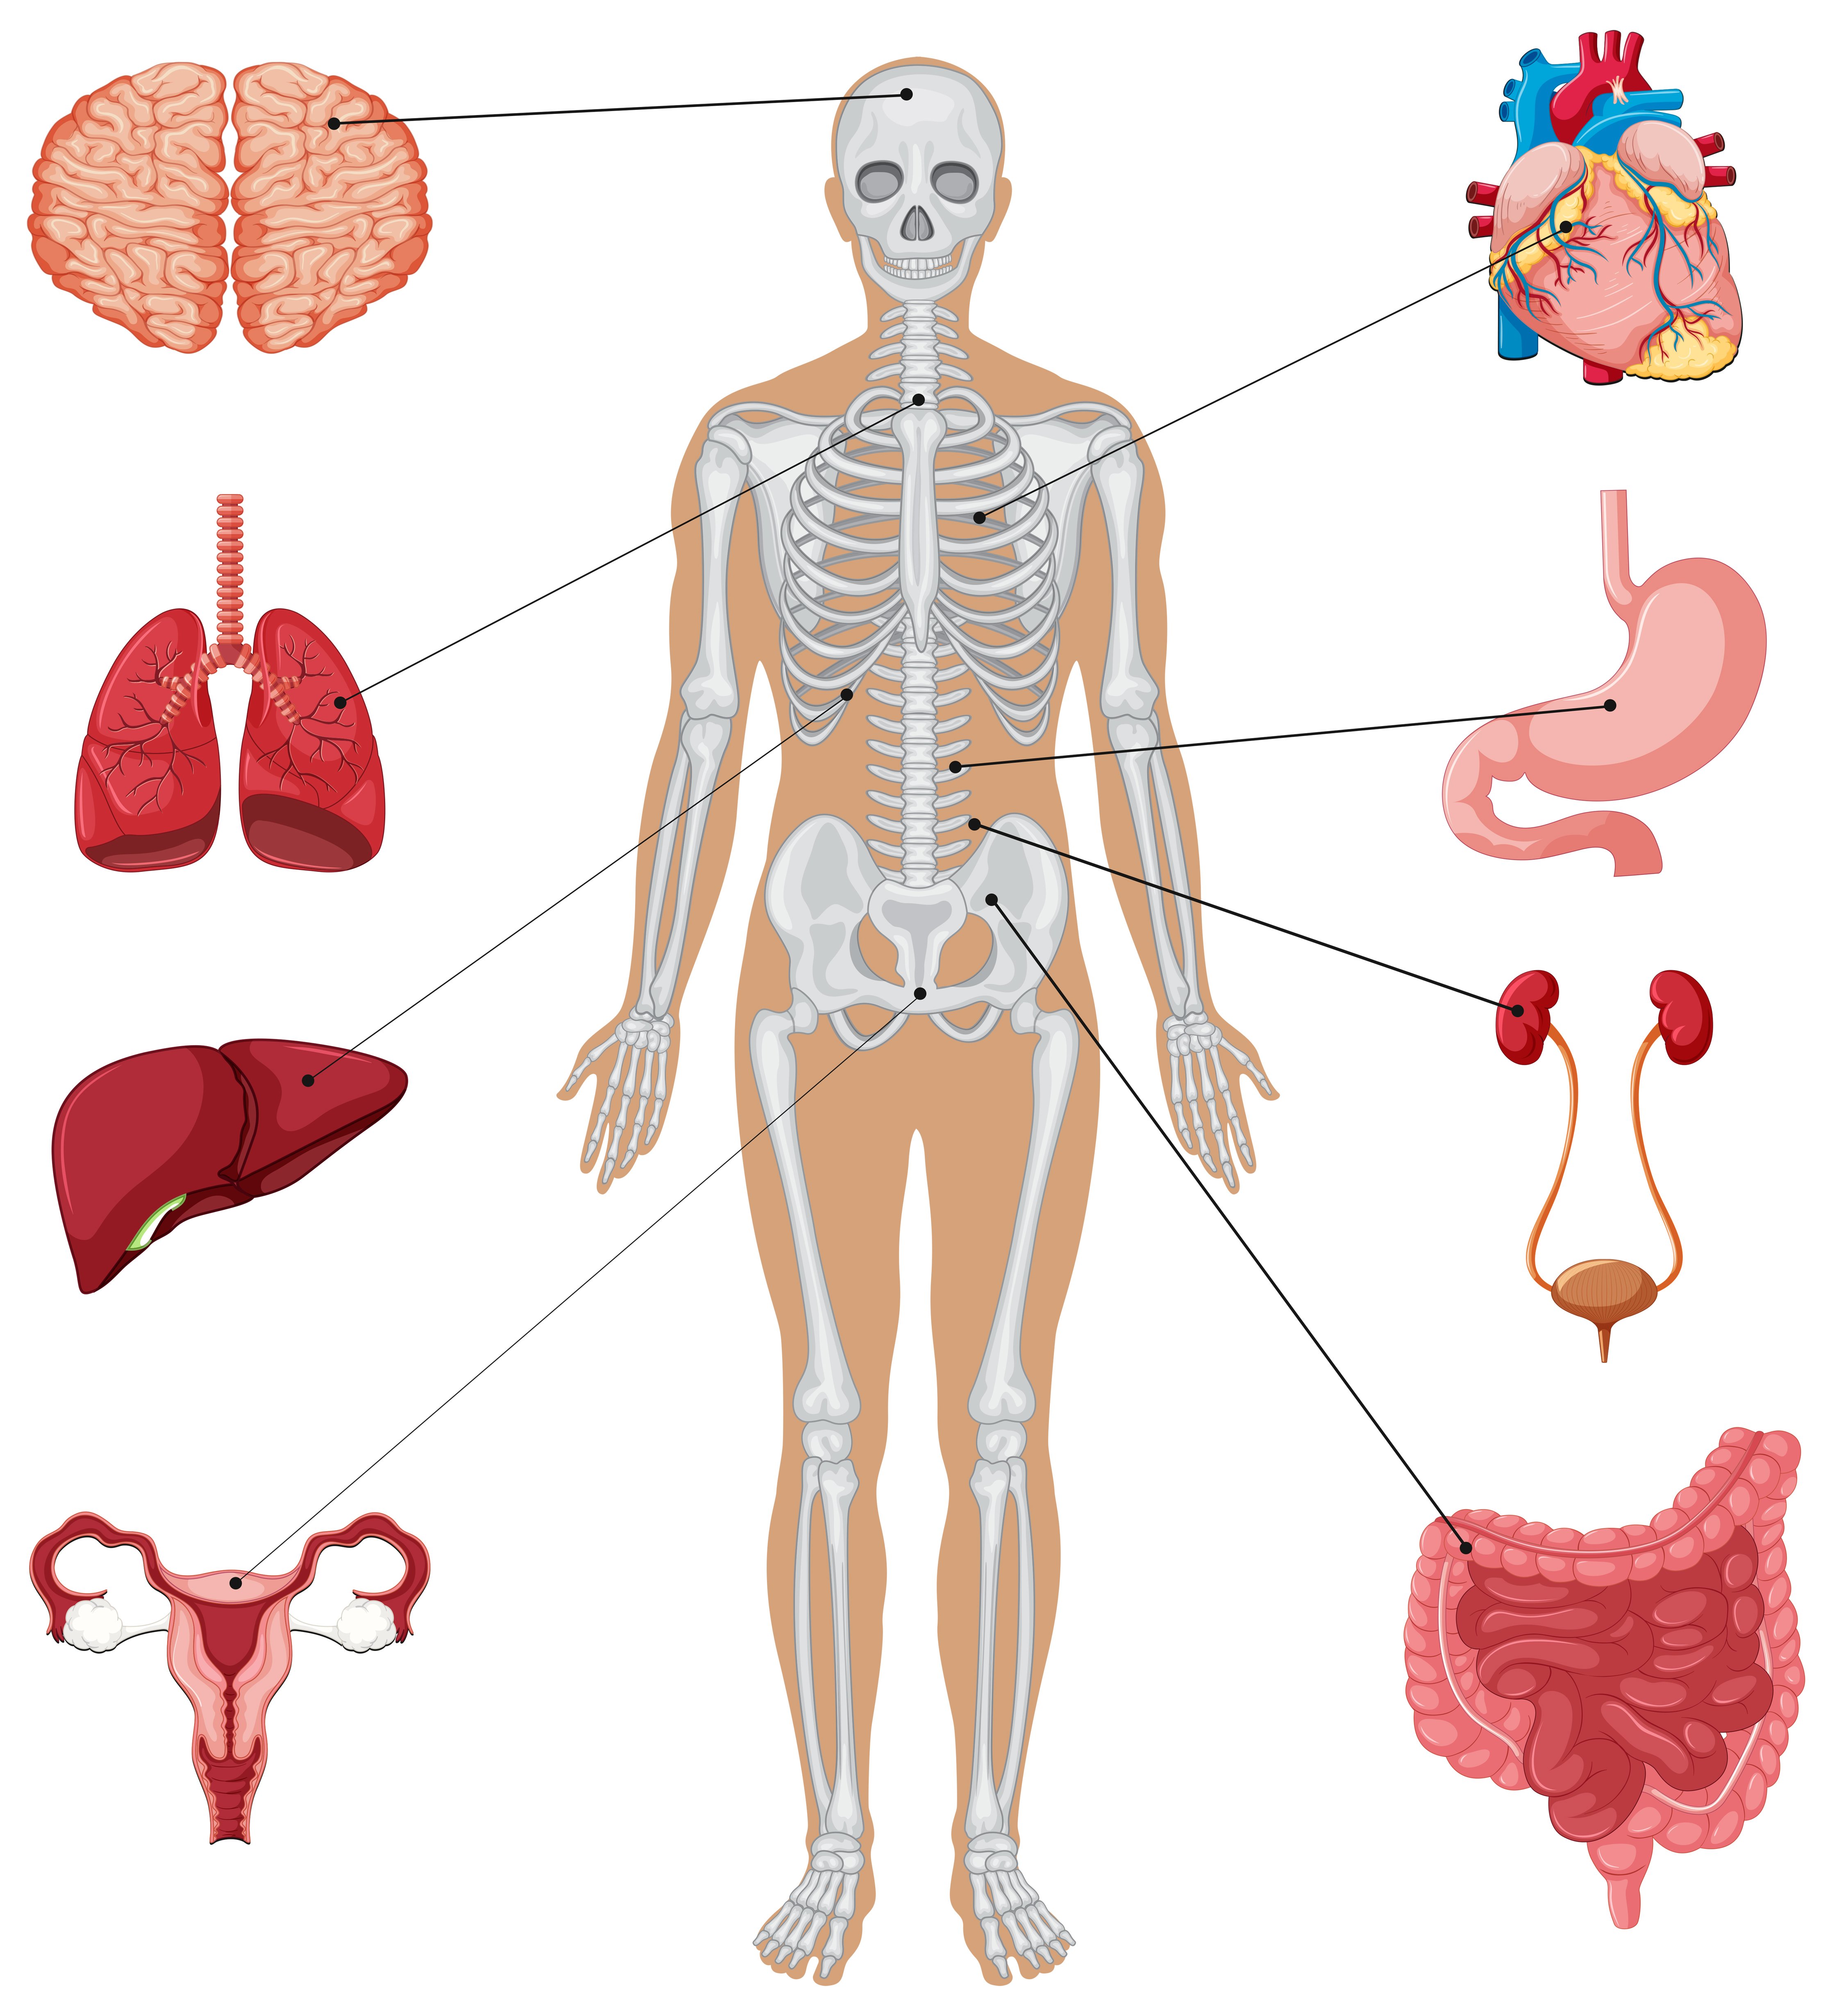 Ткани и органы в организме человека — что это, определение и ответ